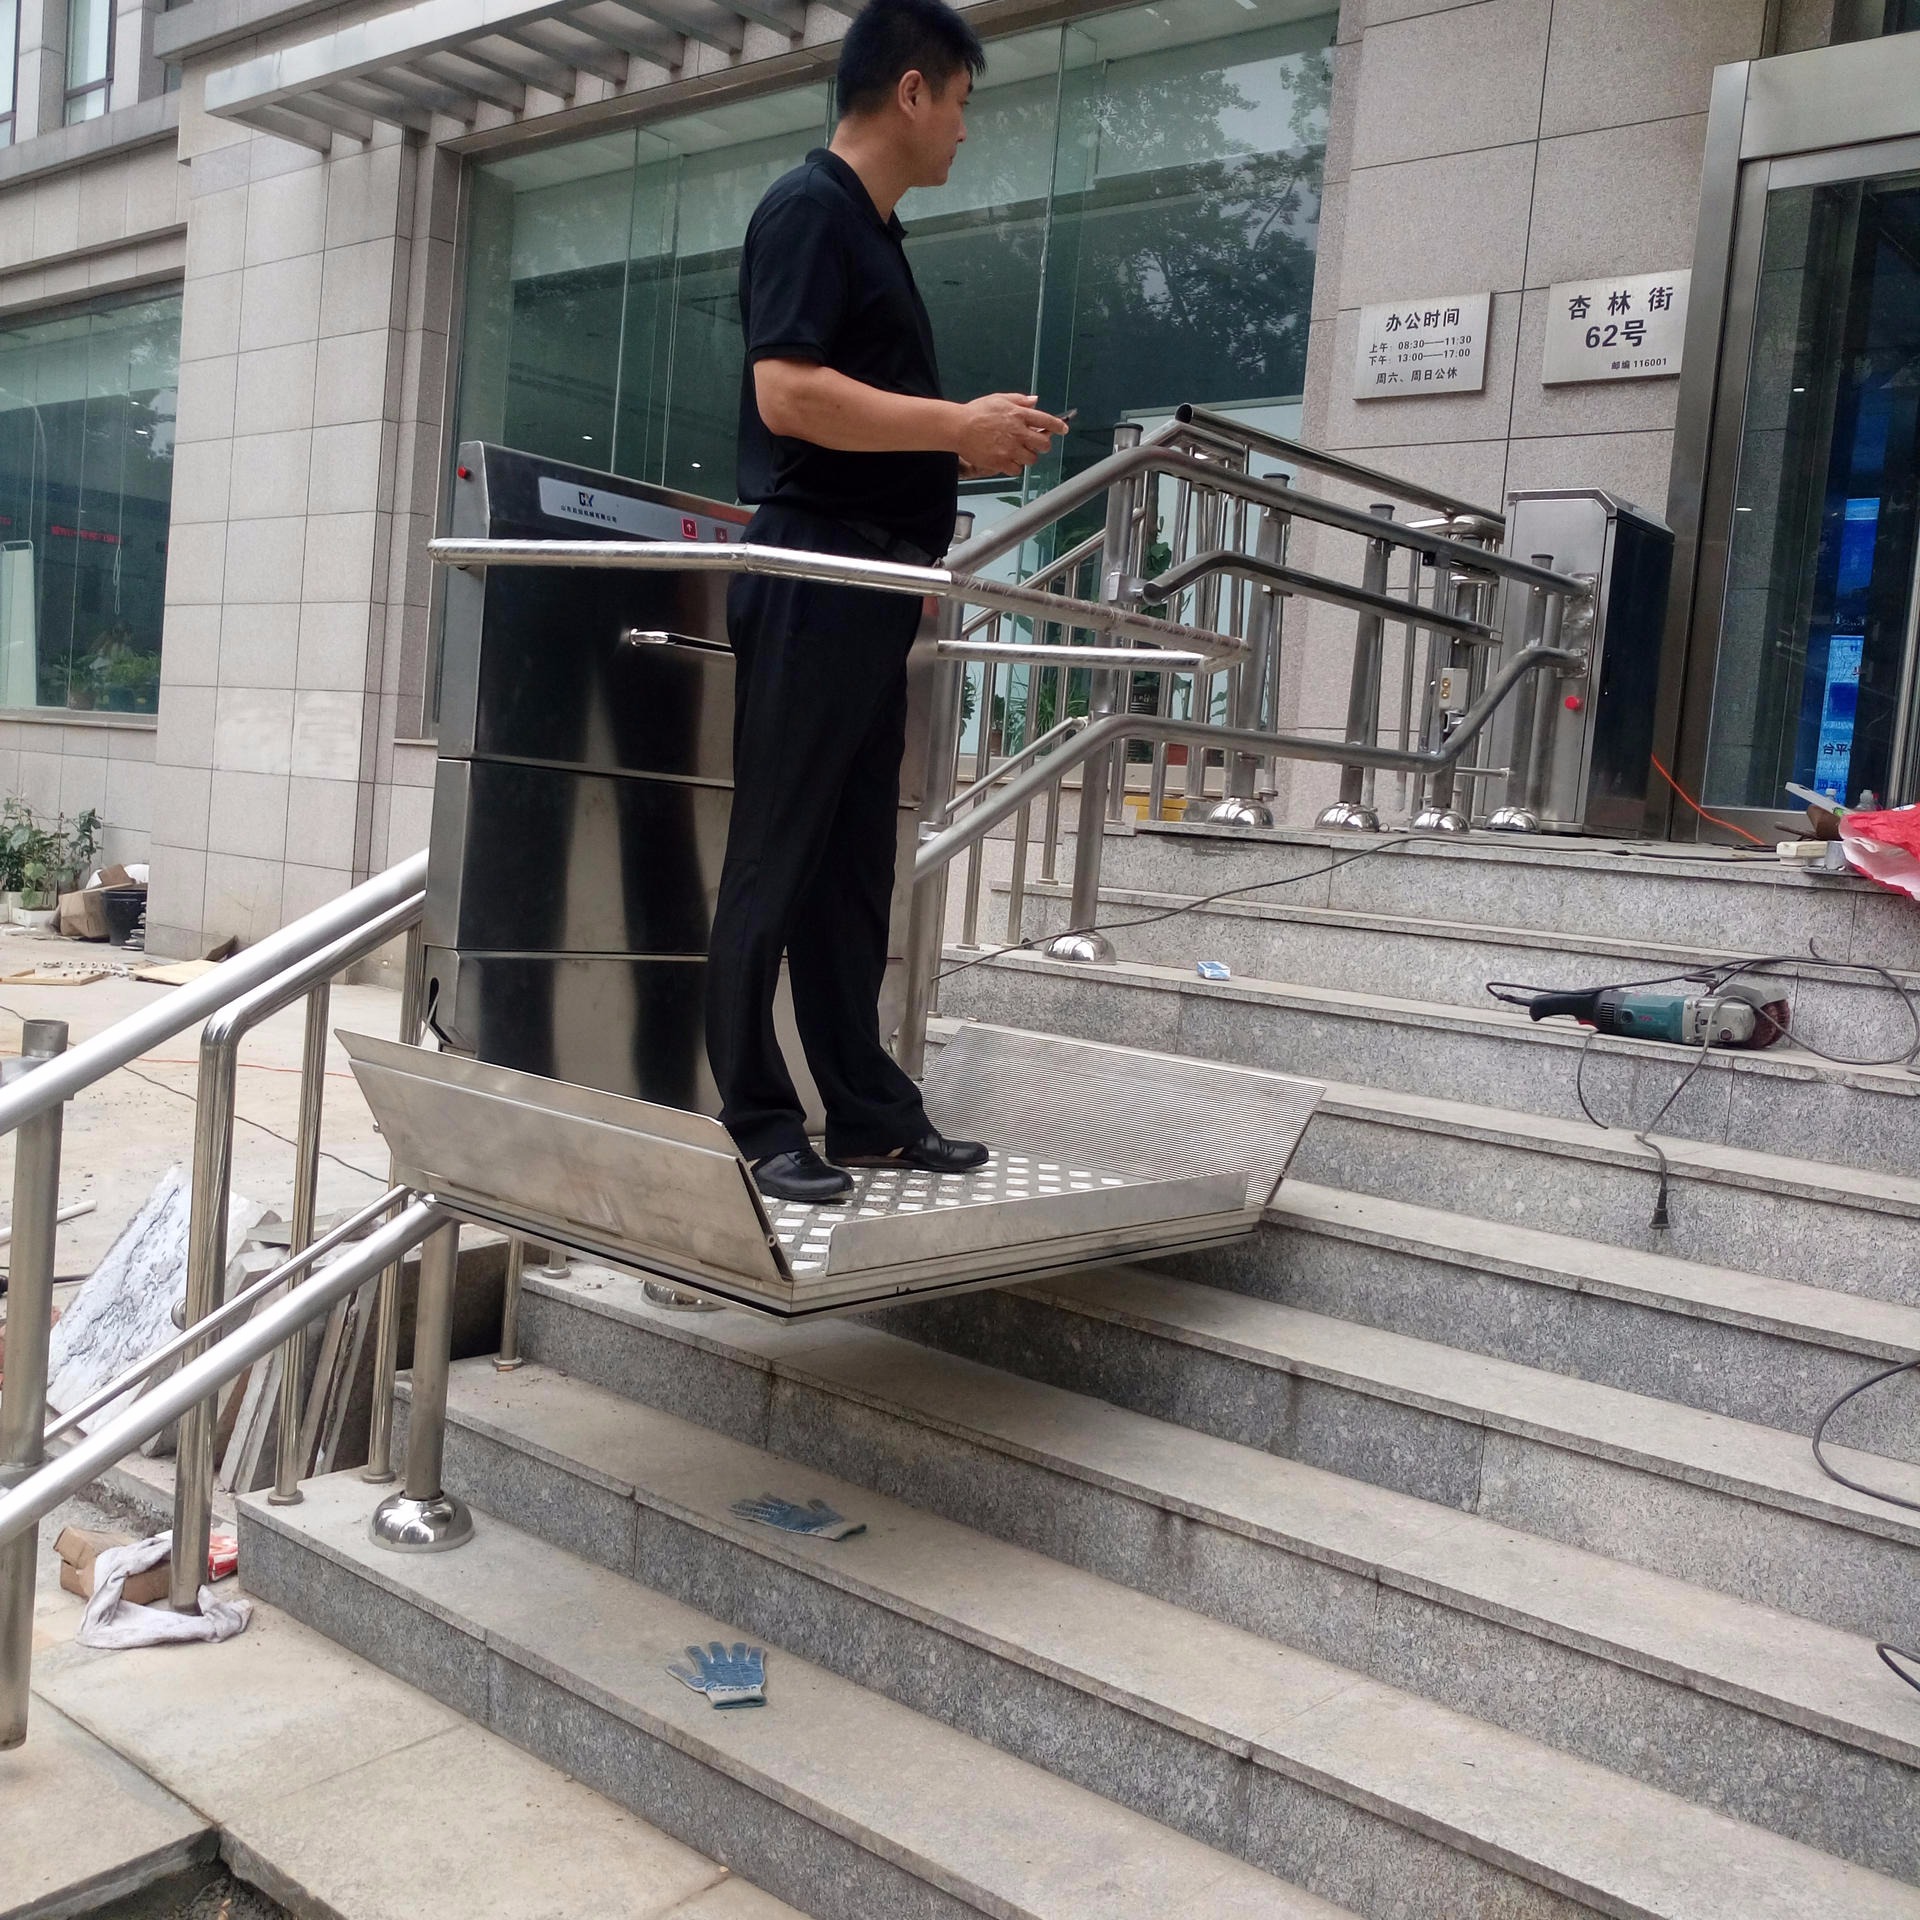 北京市 密云县曲线斜挂电梯 斜挂式残疾人电梯 无障碍爬楼电梯 老人座椅式爬楼机 残疾人自动升降台